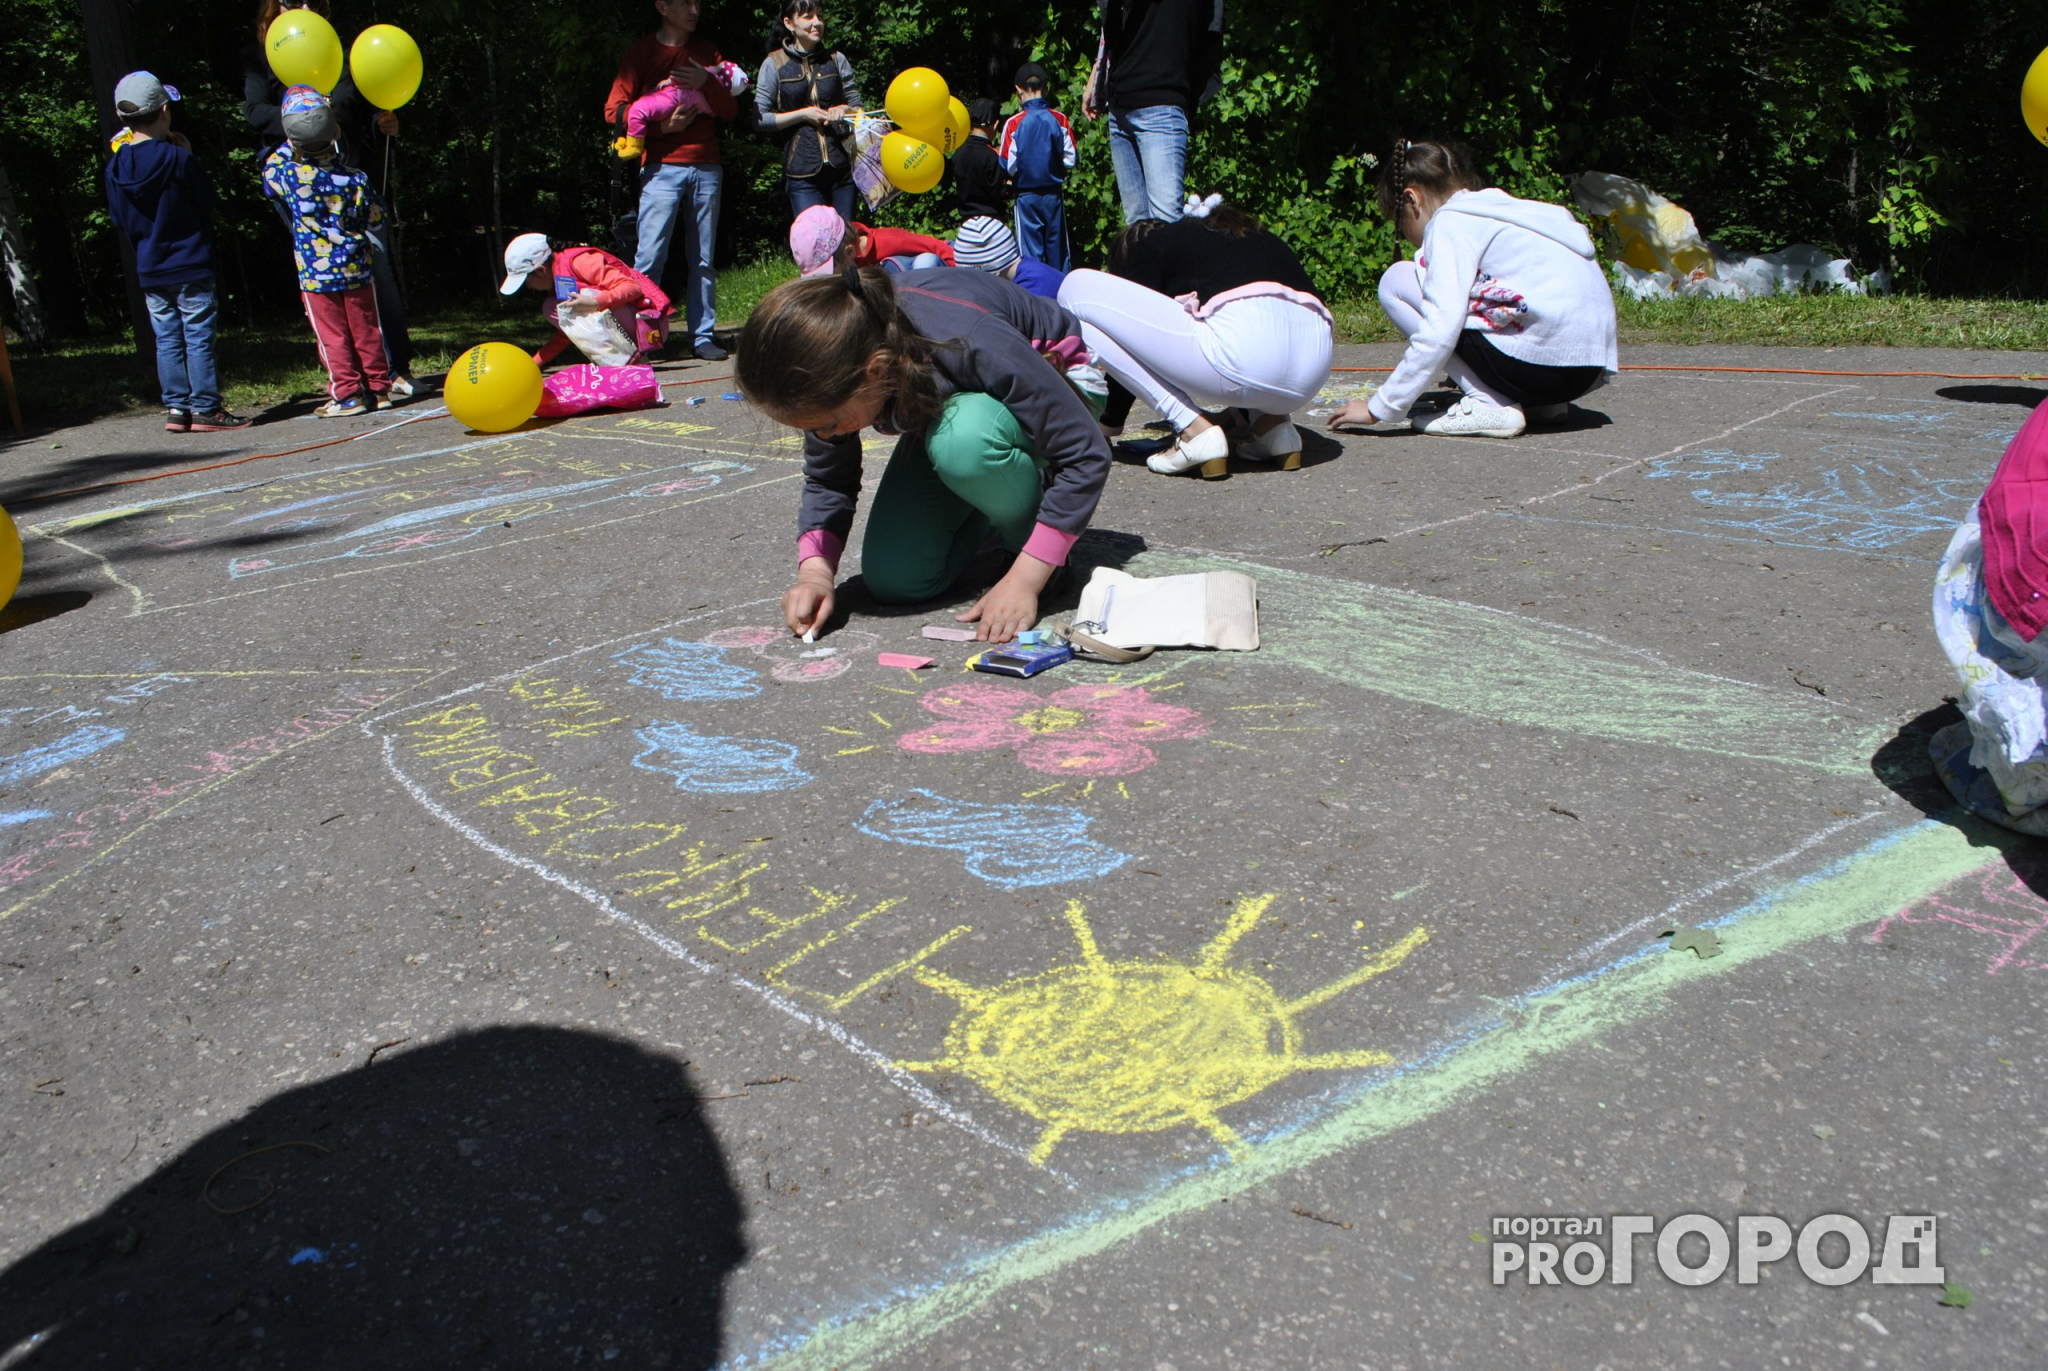 В Международный день защиты детей в Лакреевском лесу юных горожан ждет конкурс рисунков и подарки